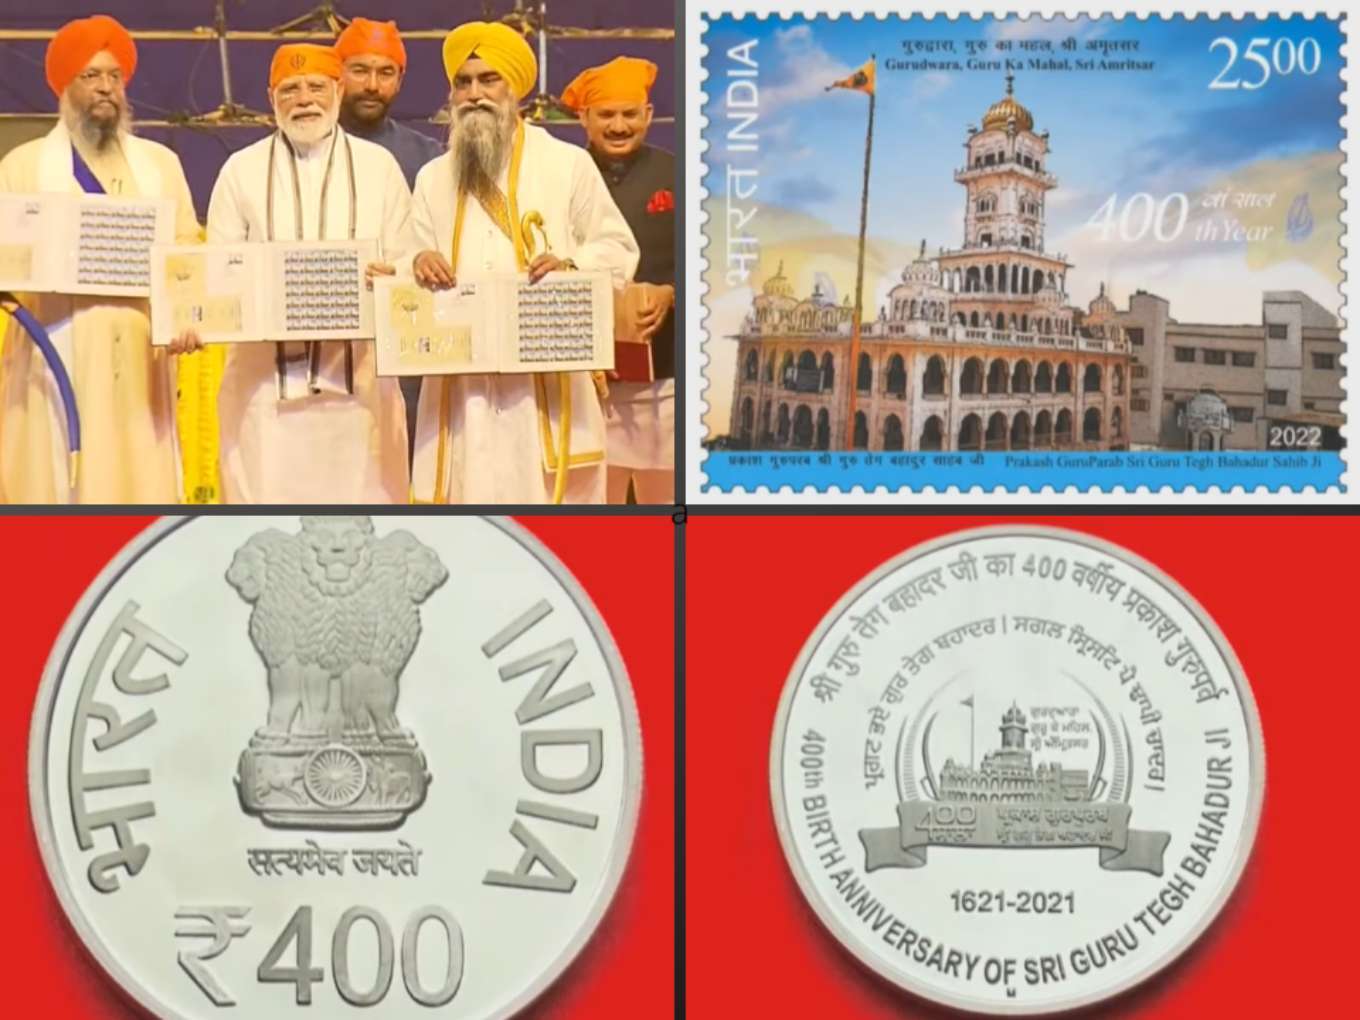 PM Modi releases coin, stamp on Guru Tegh Bahadur's 400th Parkash Purab